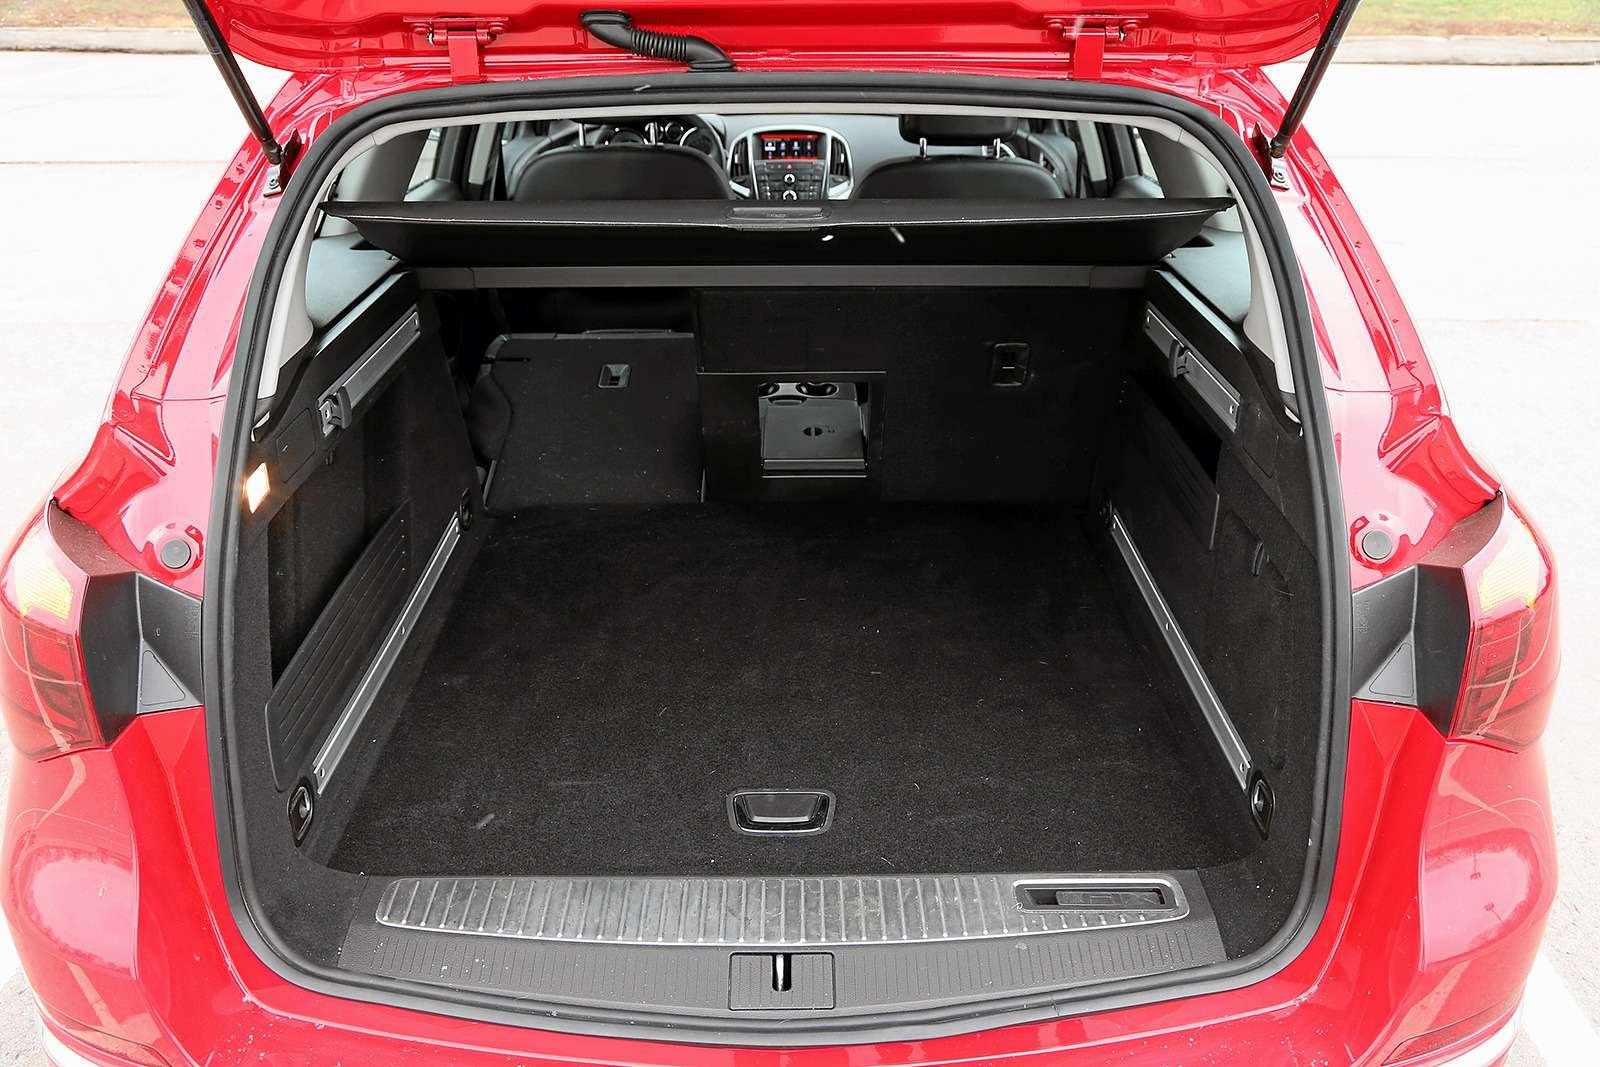 Шевроле круз универсал багажник. Opel Astra j хэтчбек багажник. Opel Astra 2011 универсал багажник.